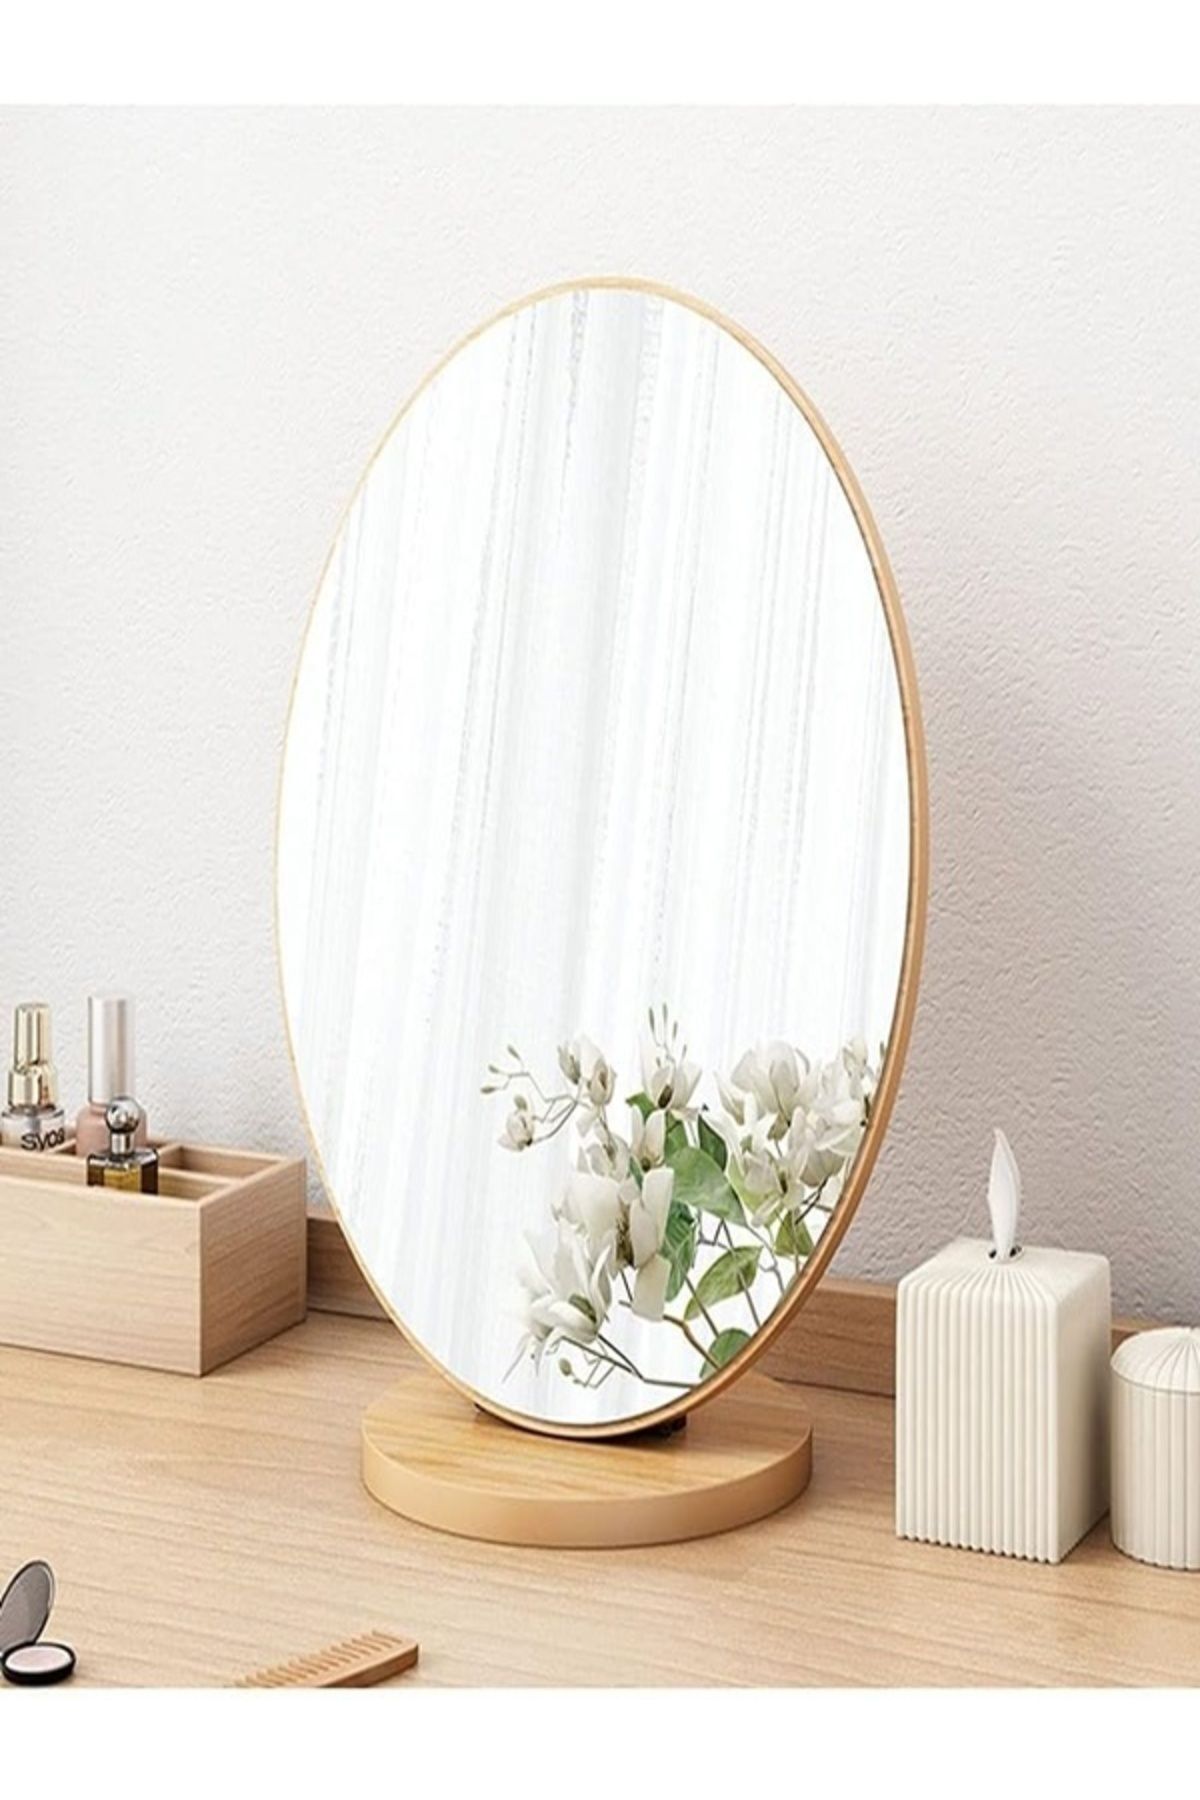 gaman Masaüstü Ayna Eğimi Ayarlanabilir Menteşeli 22 Cm Oval Görünümlü Ahşap Makyaj Cilt Bakımı Ayna